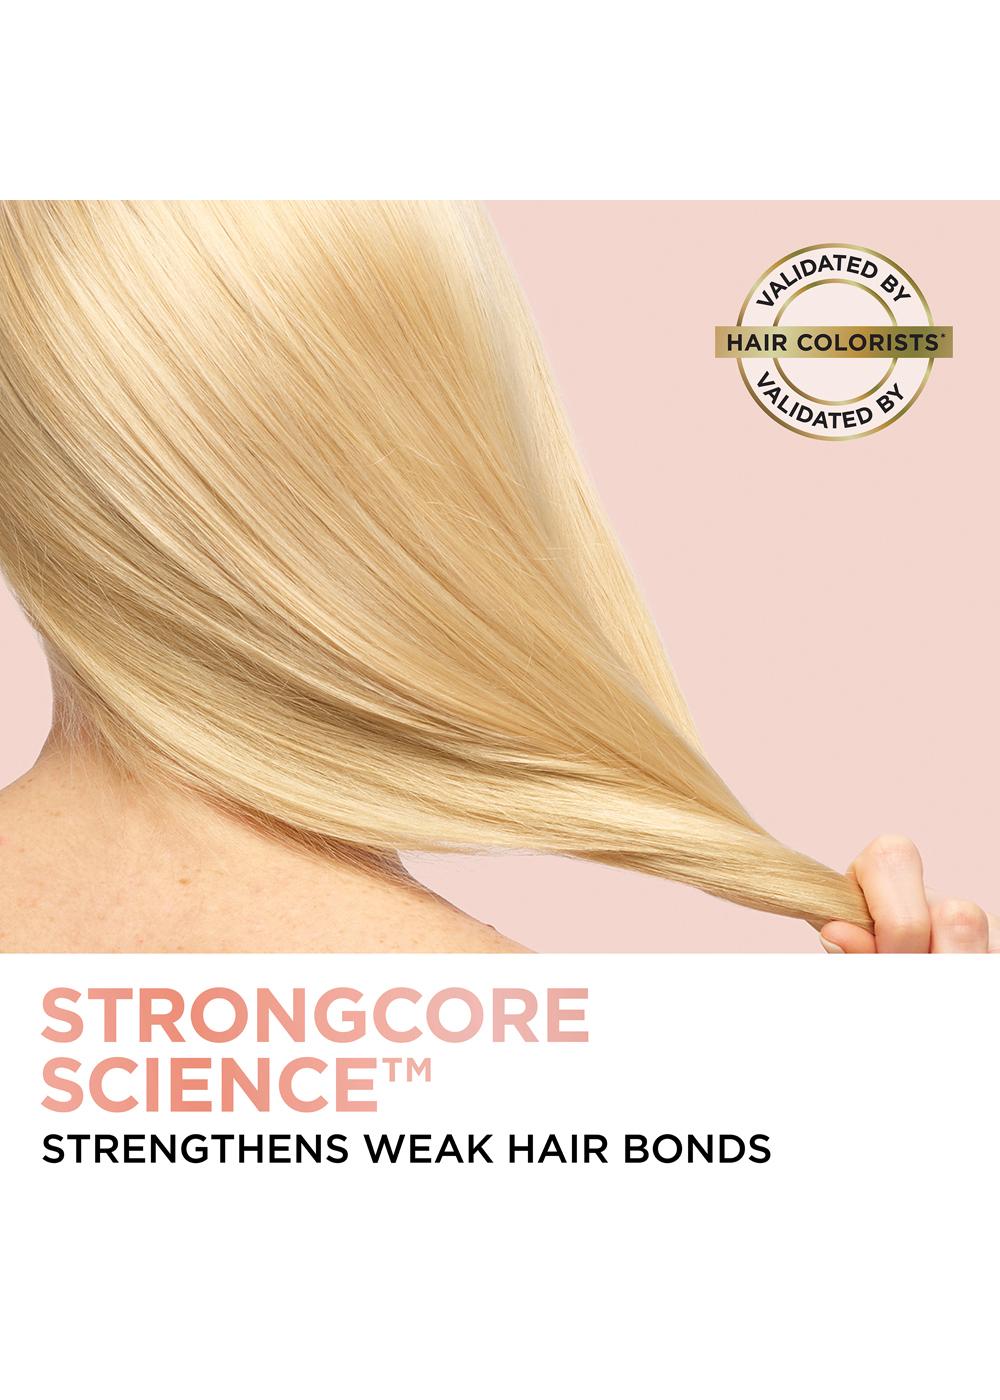 L'oreal Ever Pure Shampoo, Bond Strengthening - 6.8 fl oz